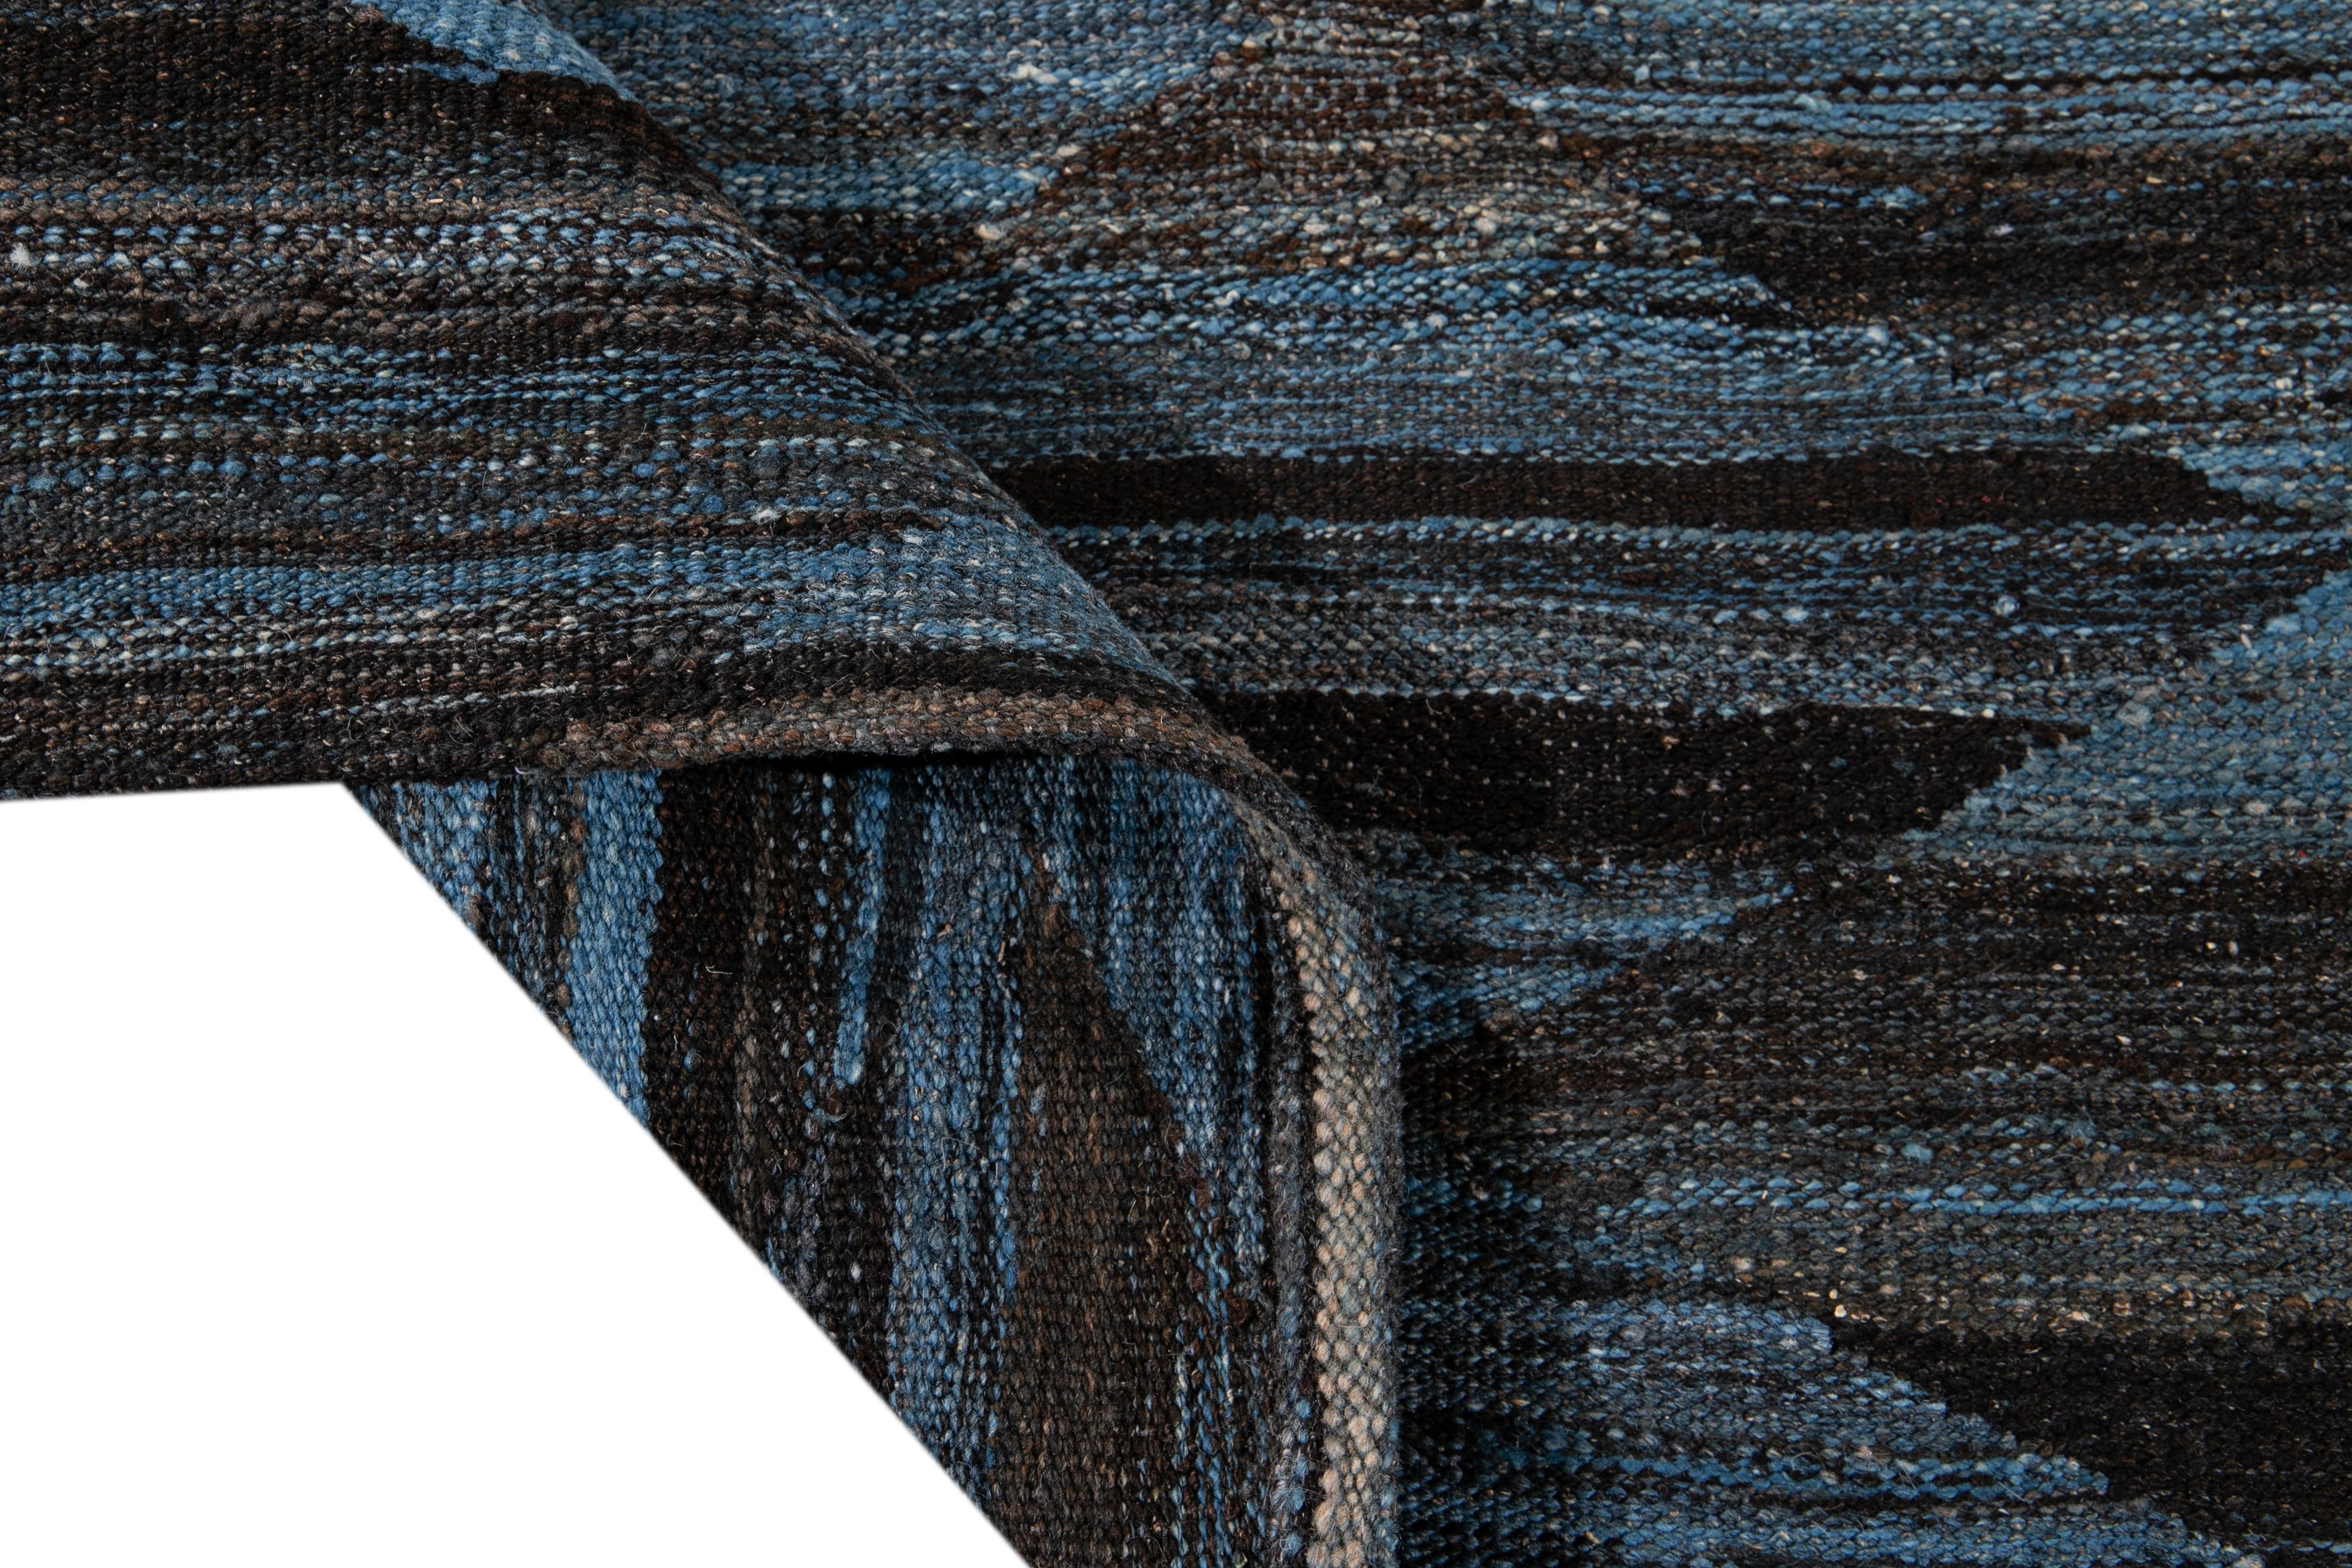 Magnifique tapis Kilim moderne en laine tissé à plat, fait main, avec un champ brun. Ce tapis Kilim a des accents d'ivoire et de bleu dans un magnifique design expressionniste abstrait.

Ce tapis mesure : 8'10